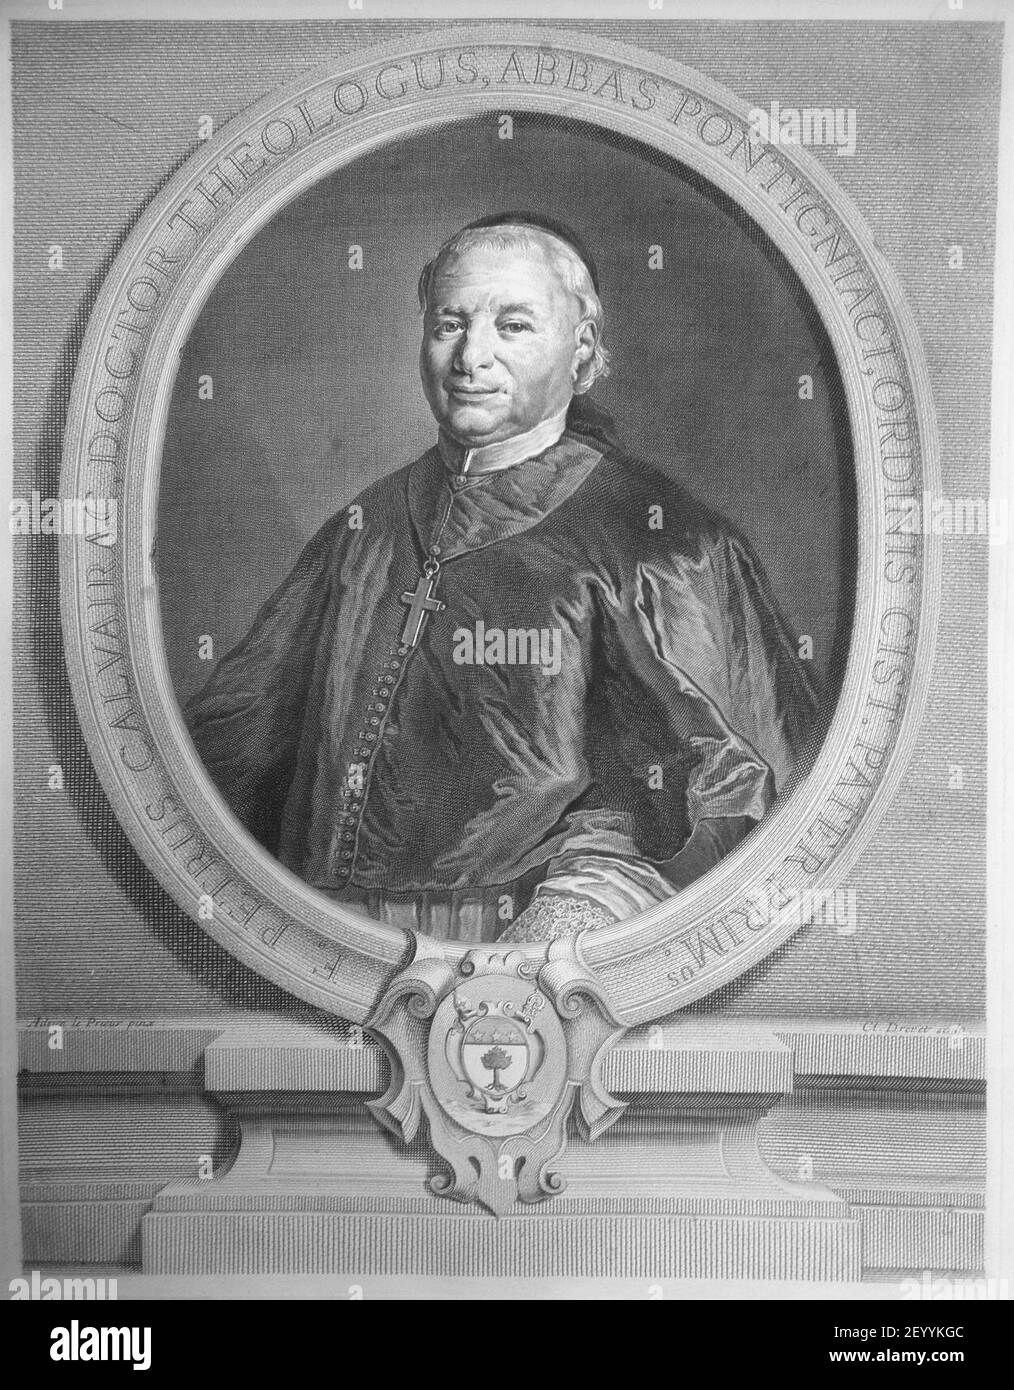 Pierre Calvairac, 1719-1741 abbe de Pontigny. Stockfoto